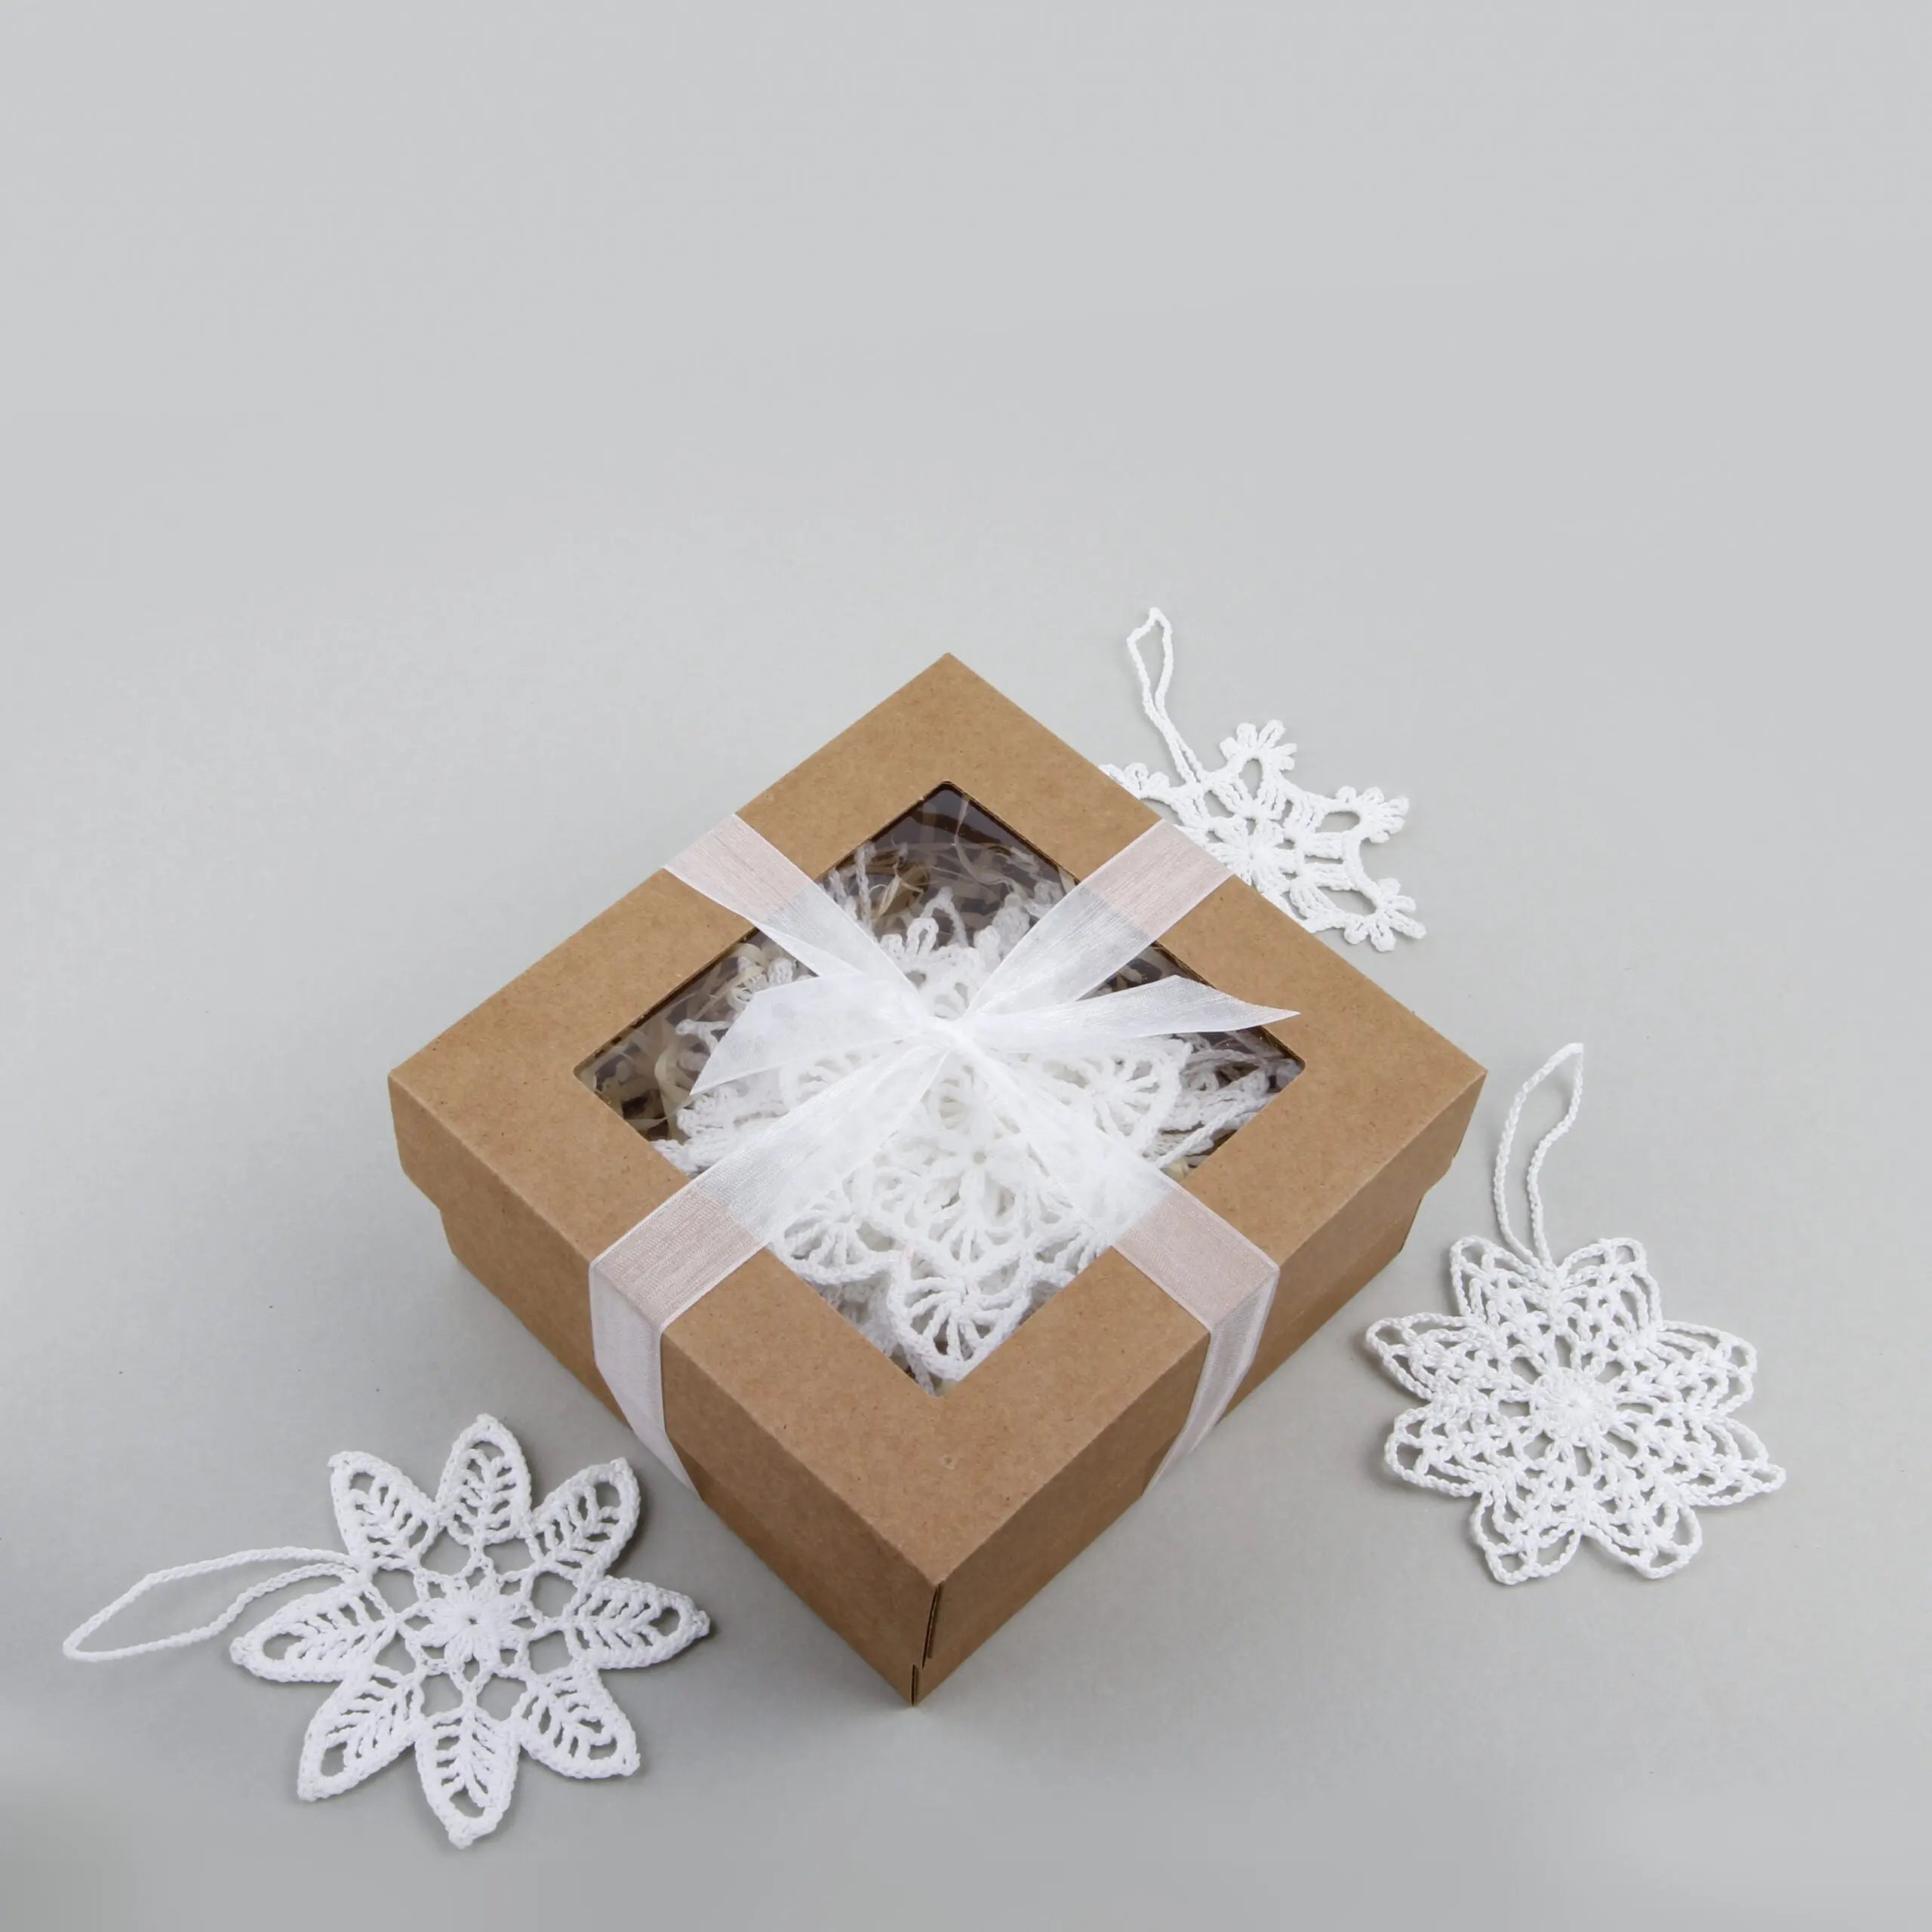 Crochet Snowflake Hanger Set - Handmade Decor - SMUKHI